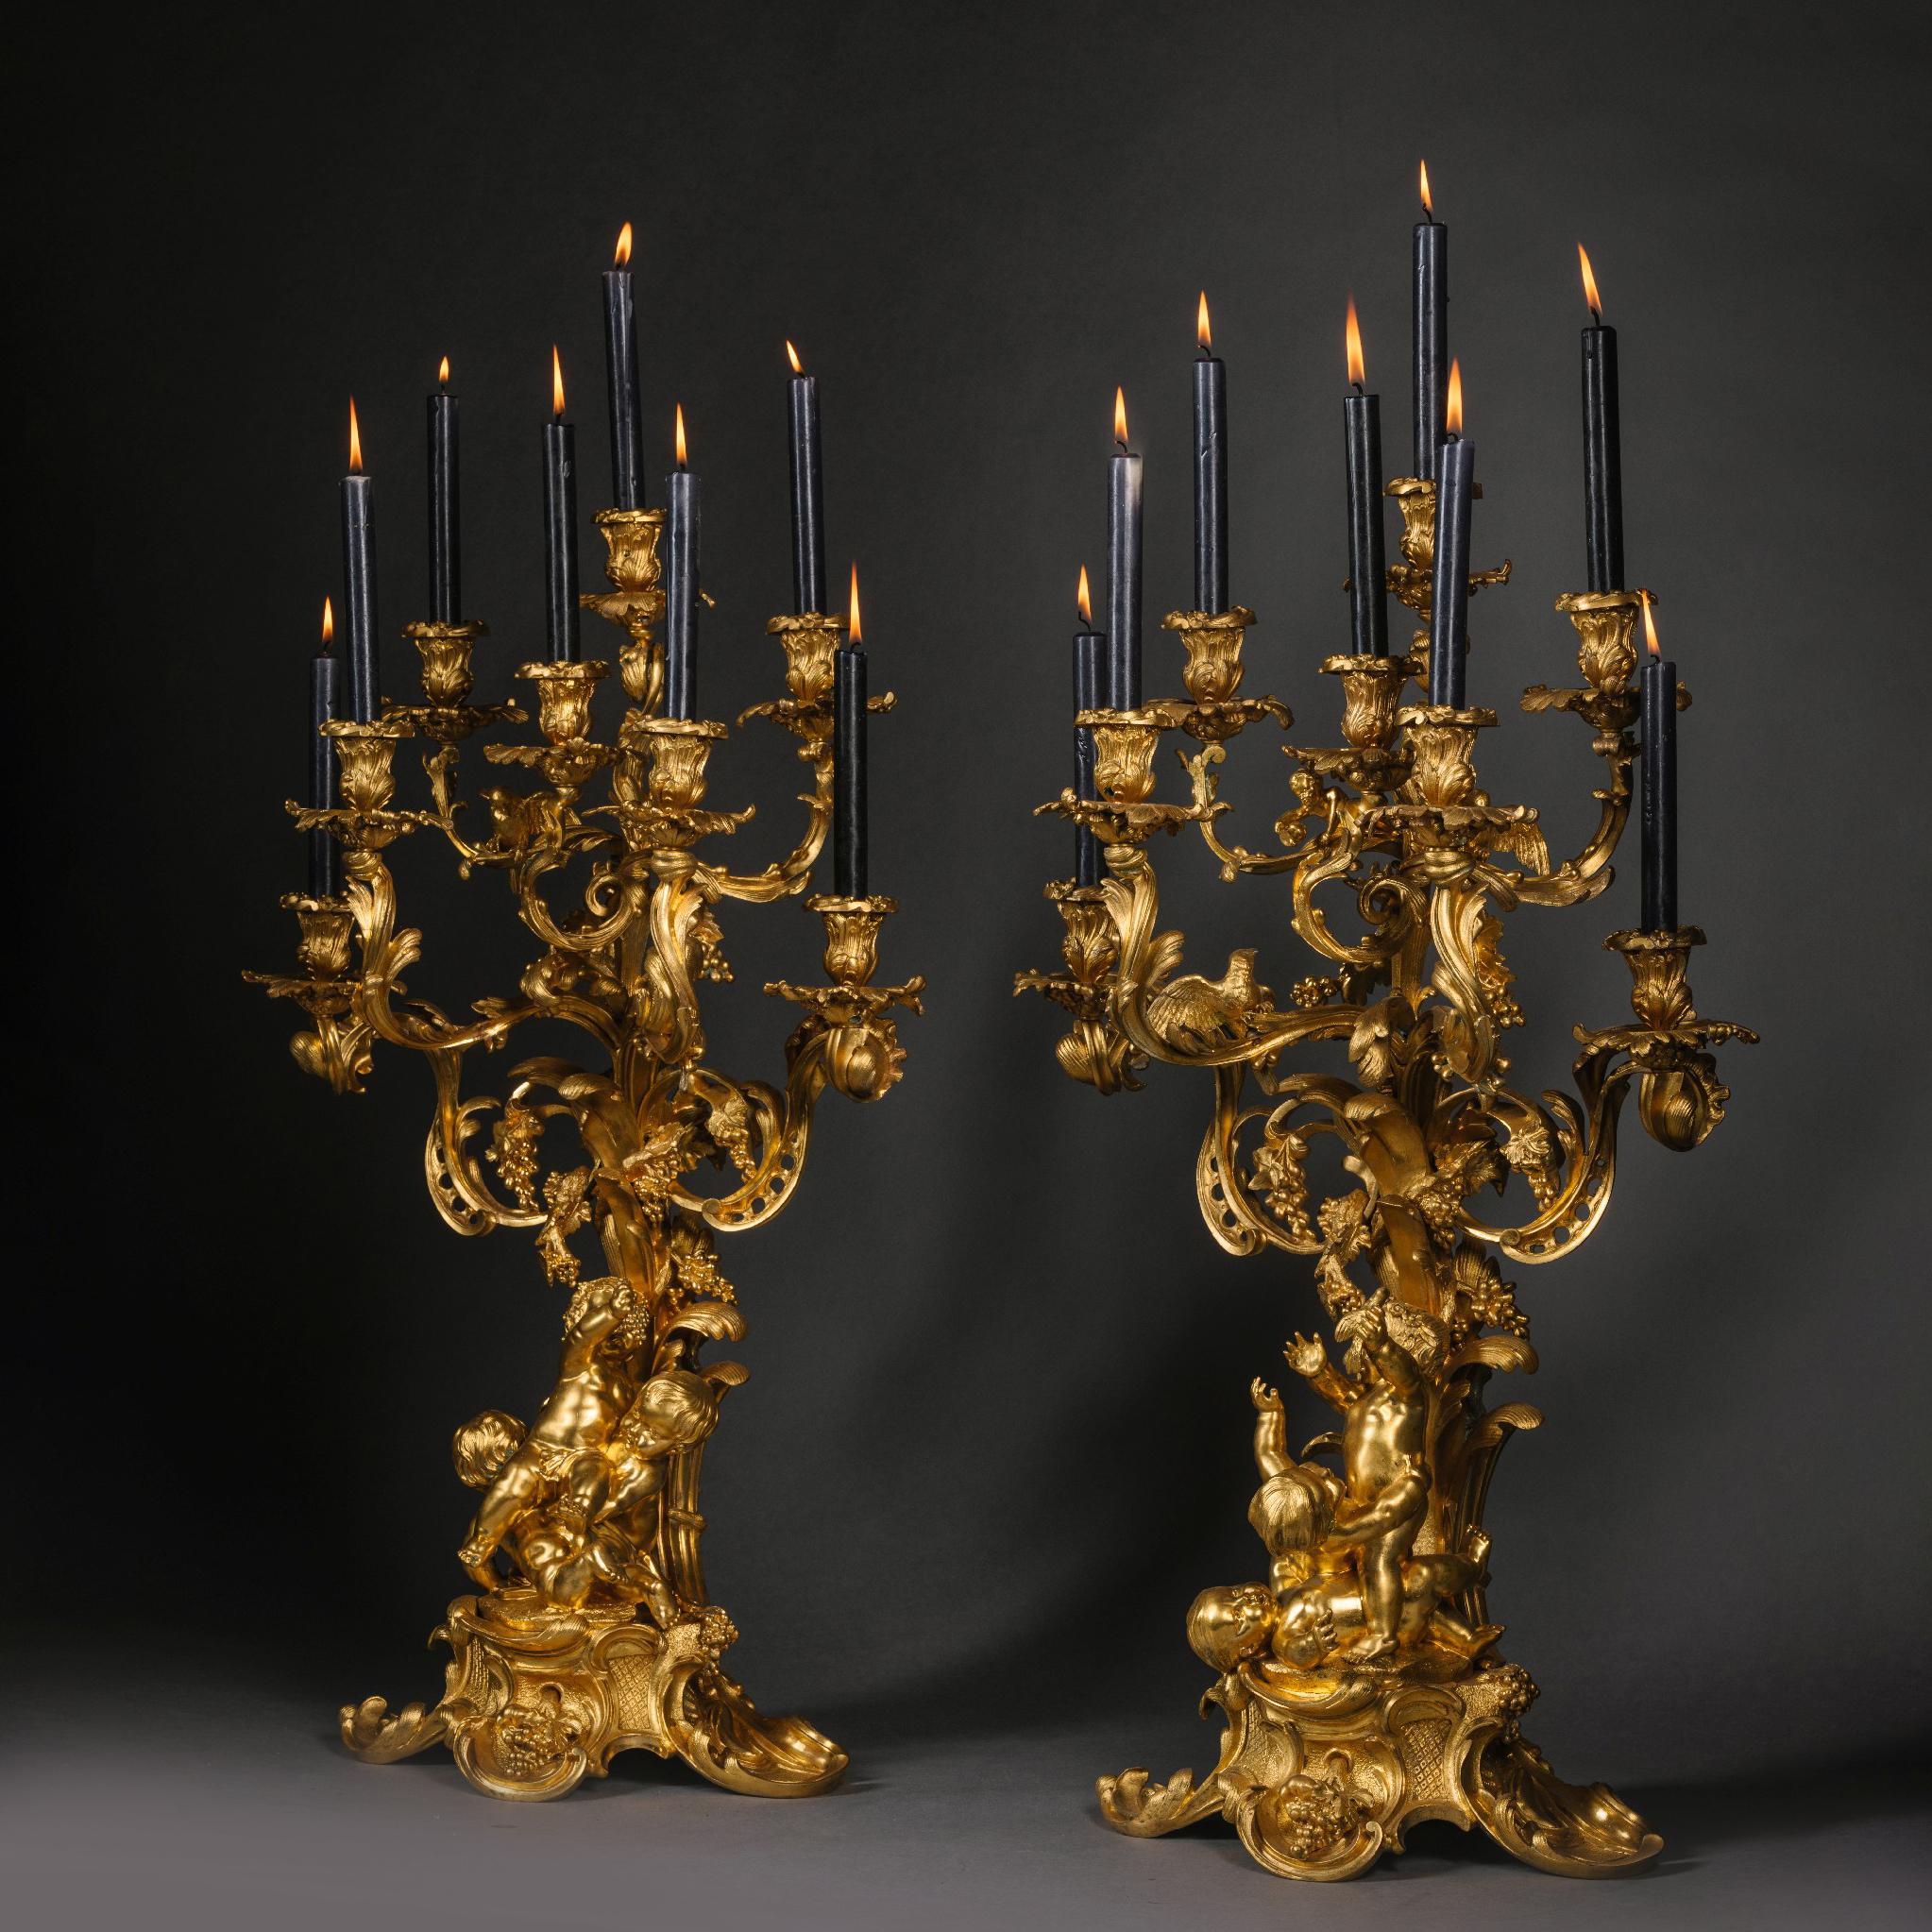 Ein Paar vergoldeter Bronzekronleuchter im Stil Louis XV, Victor Paillard zugeschrieben.

Sie sind überschwänglich im Stil des Rokoko modelliert und zeigen verspielte Putten, die Trauben von einem Baum pflücken. Die verschnörkelten und